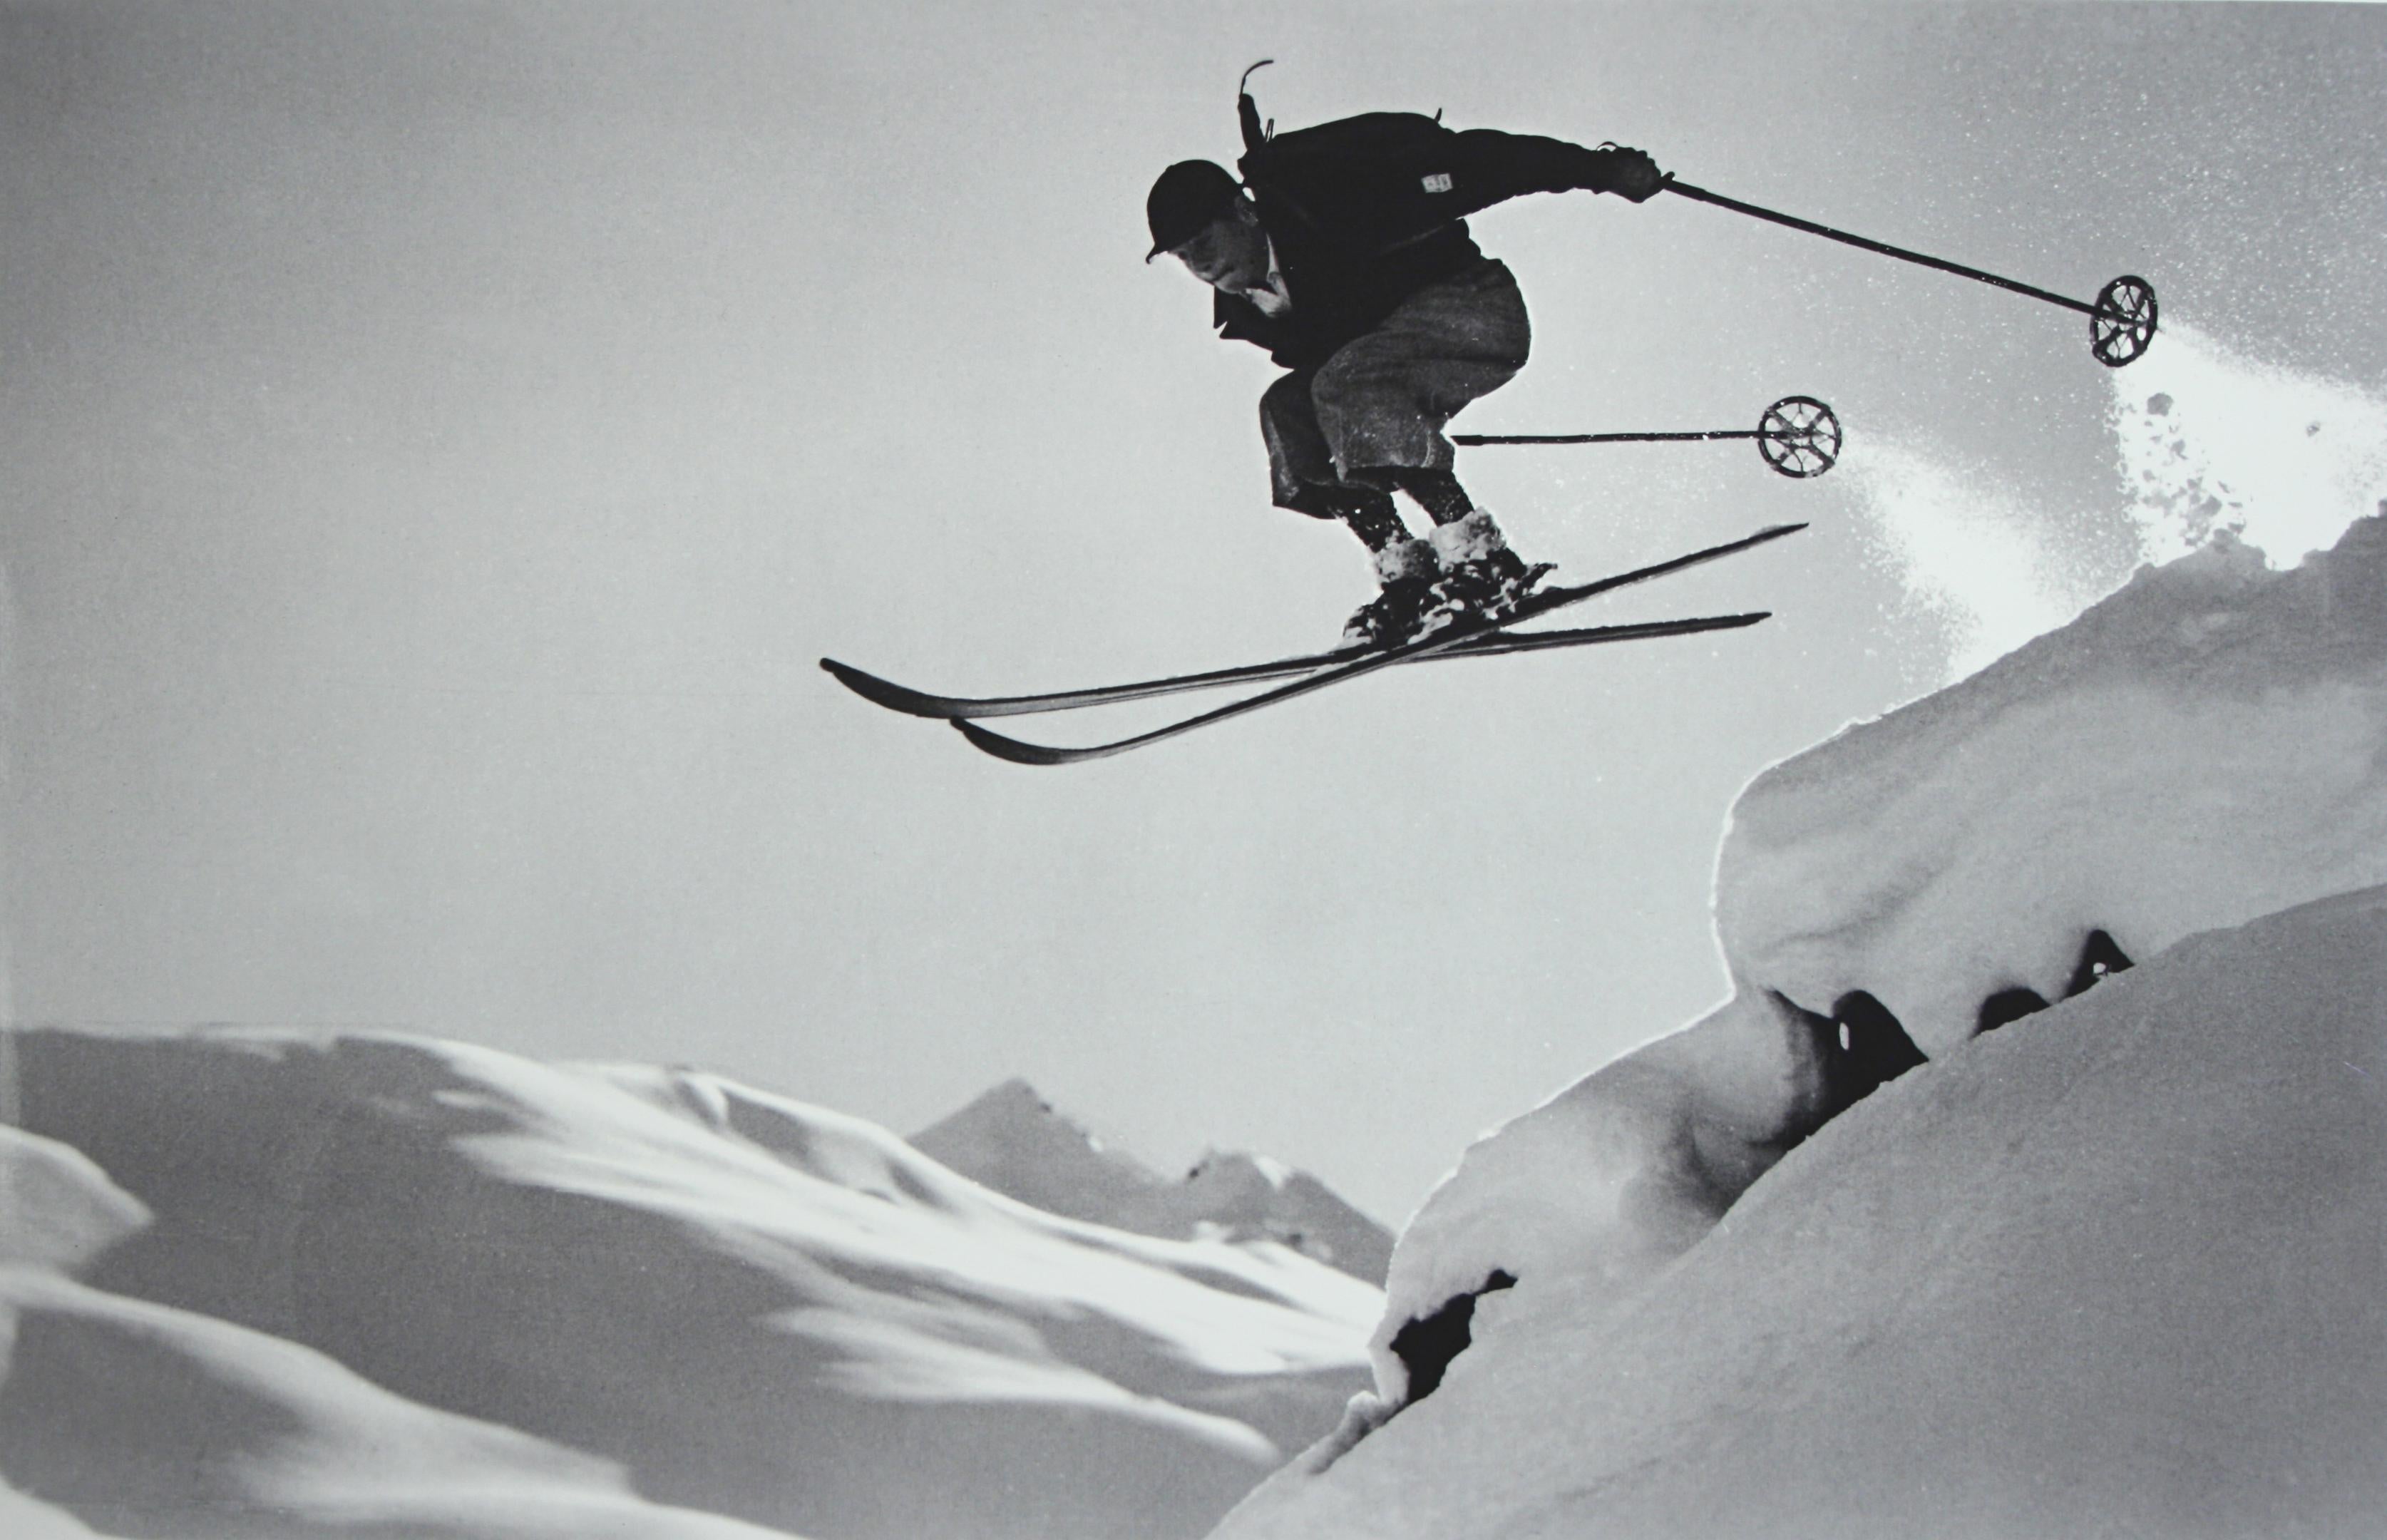 Cet article n'est pas monté.
Photographie vintage de ski, photographie ancienne de ski alpin.
A COURAGEOUS JUMP